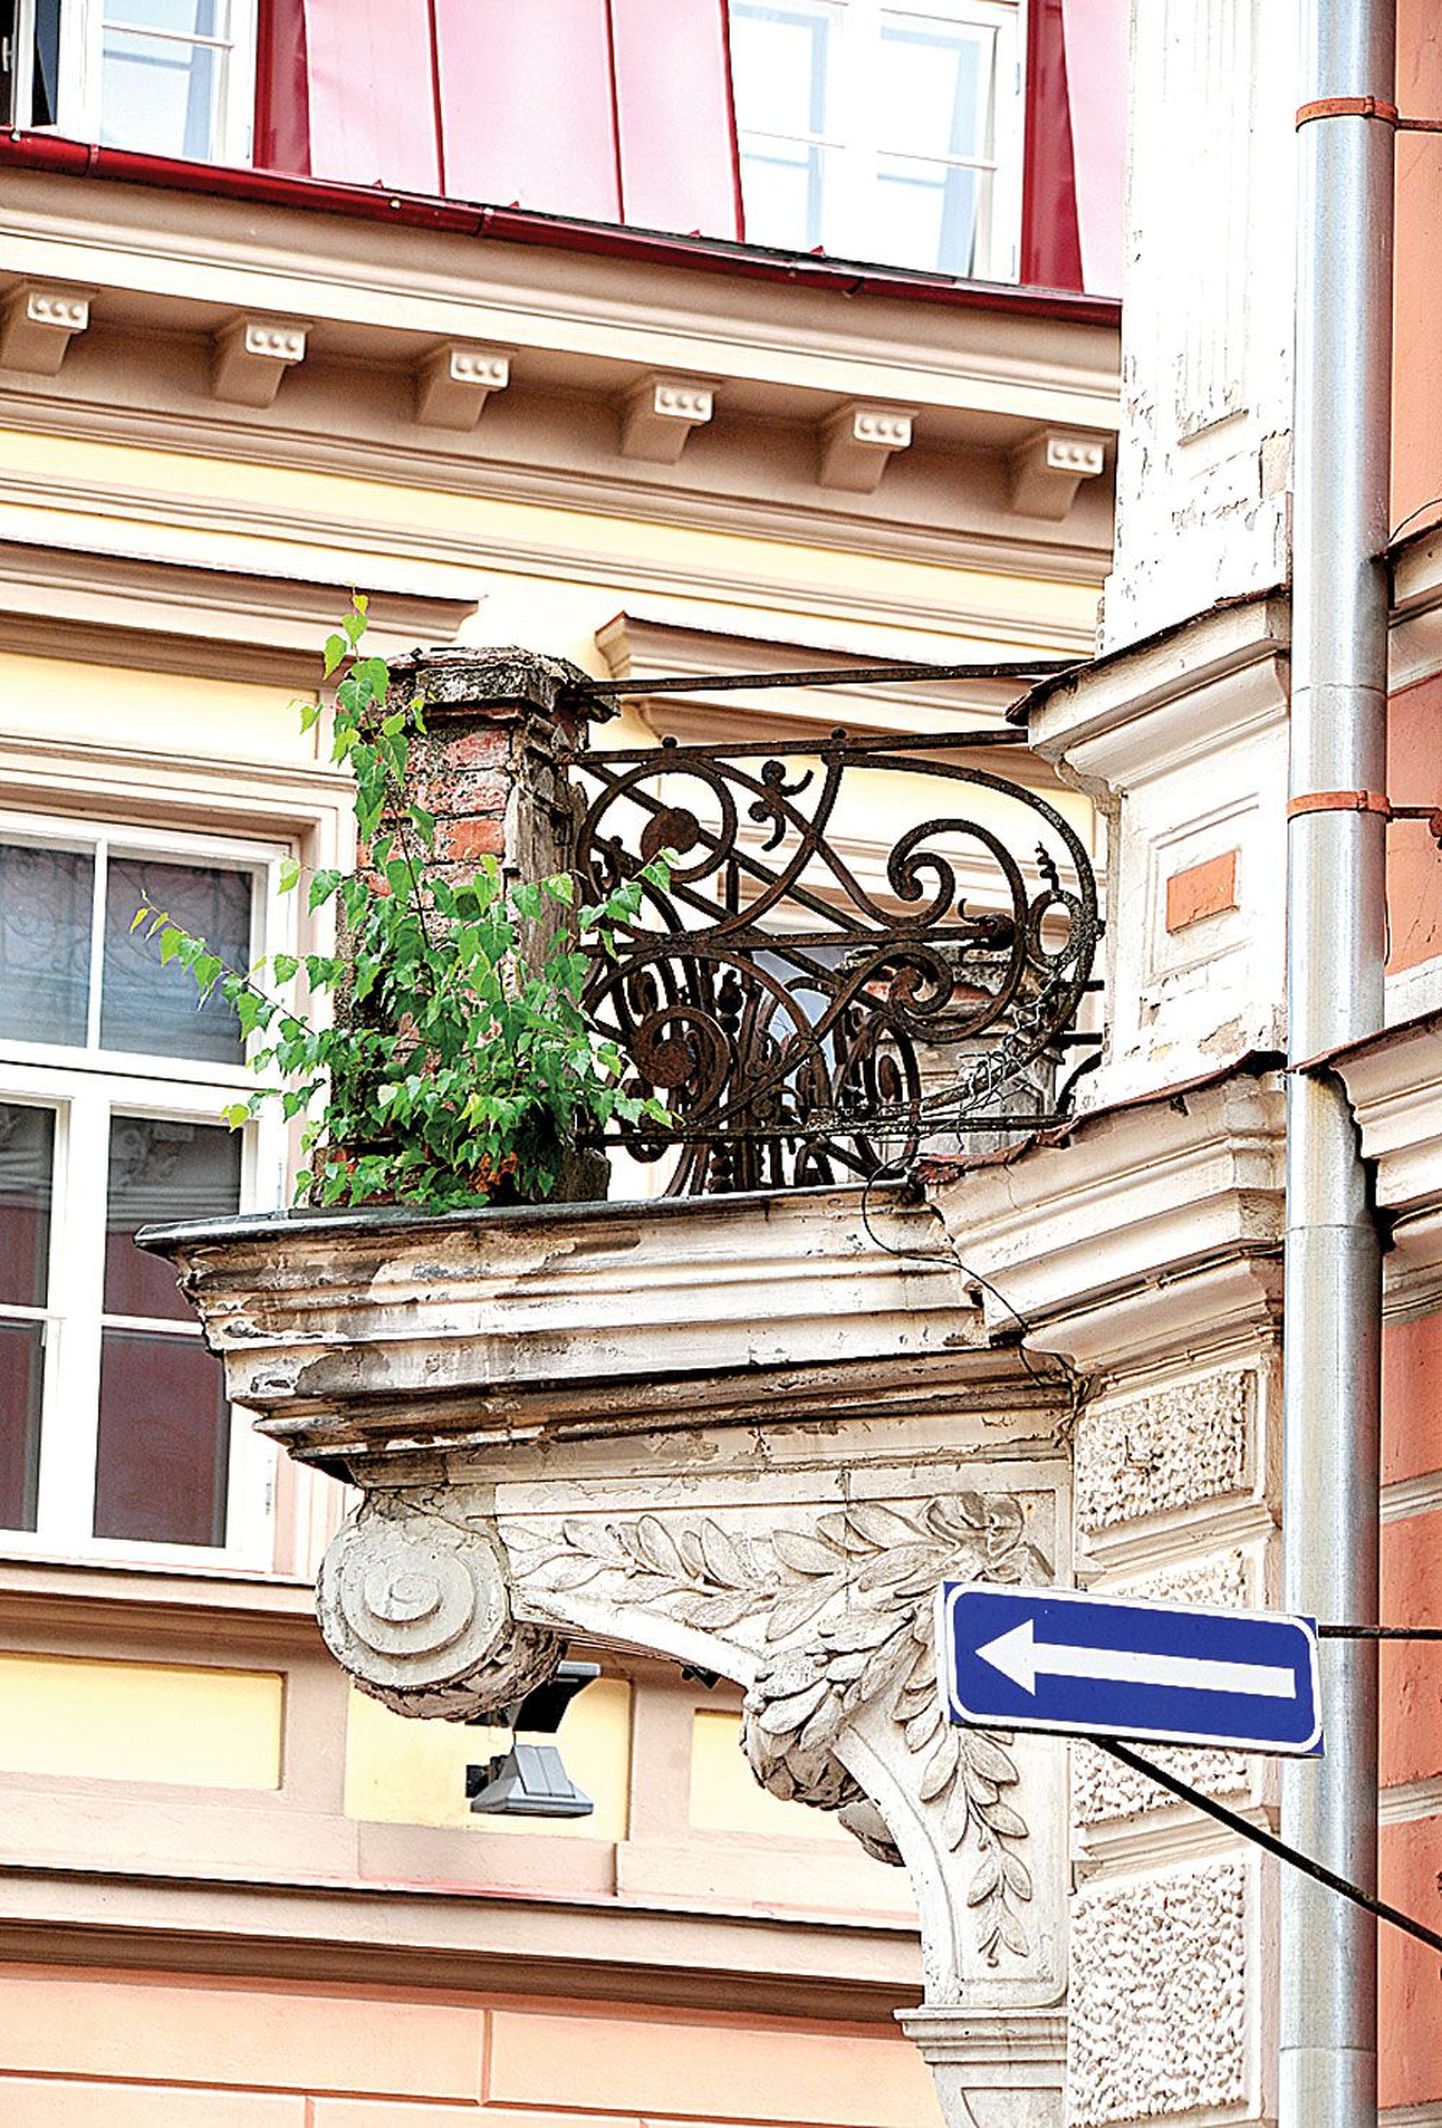 Tuulest toodud seeme on sirgunud väikeseks puuks Tartu kesklinnas Rüütli ja Munga tänava nurgal asuva maja teise korruse rõdul.